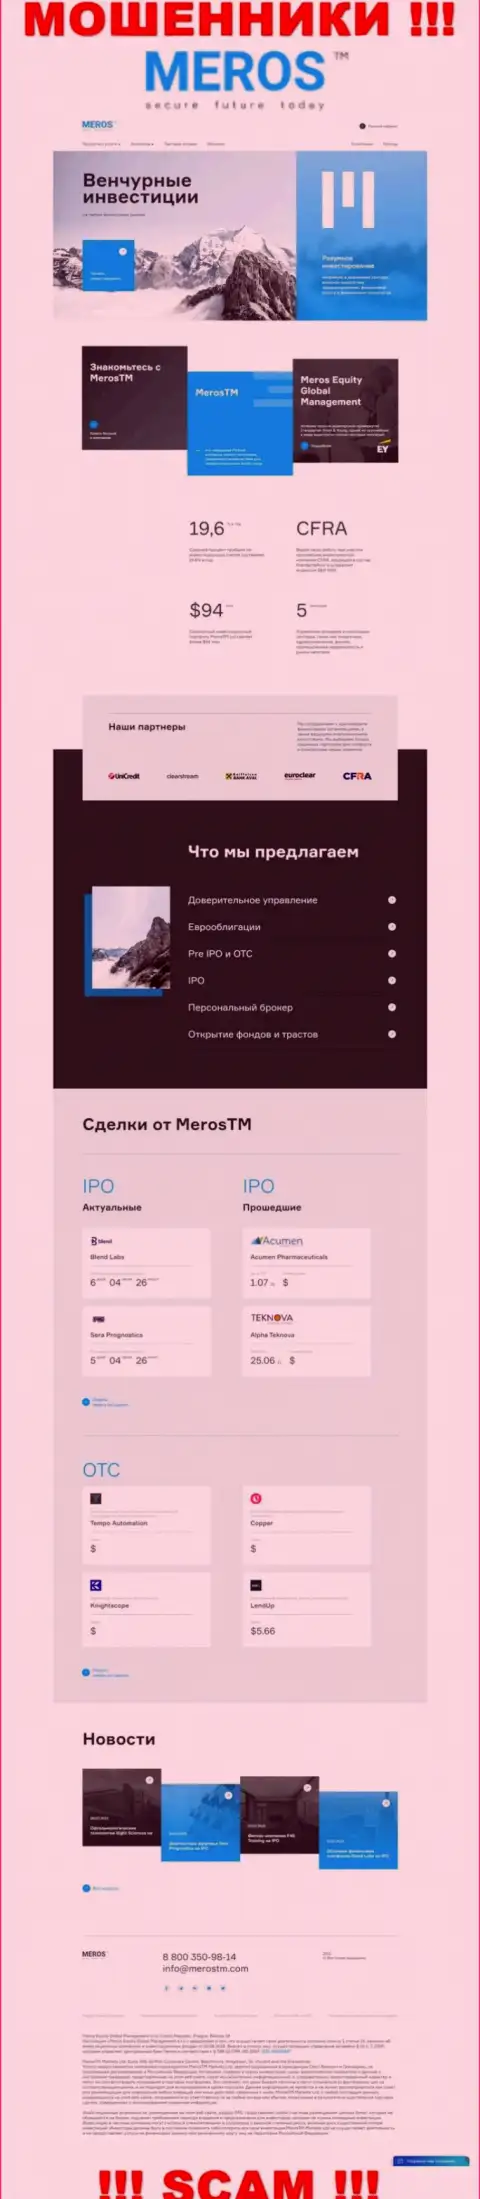 Обзор официального web-сервиса мошенников МеросТМ